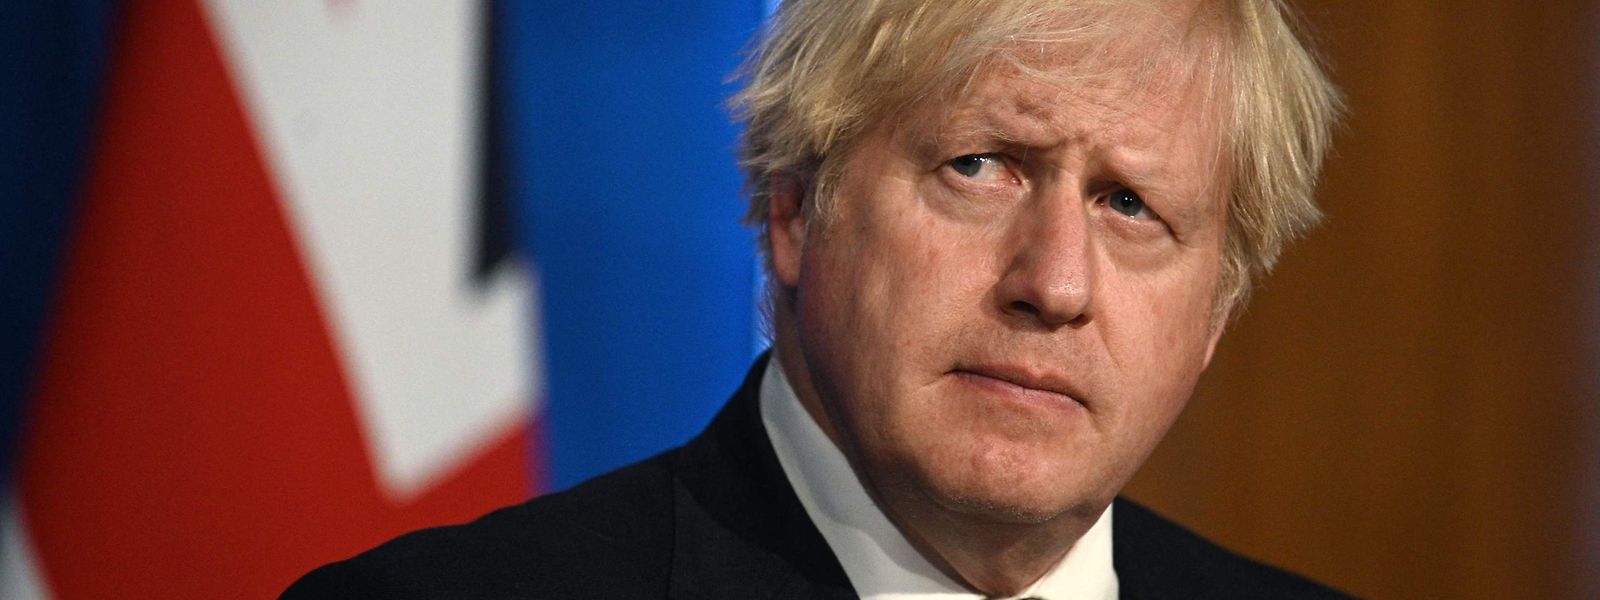 Boris Johnson wollte sich zunächst nicht in Selbstisolation begeben - obwohl er Kontakt mit dem erkrankten Gesundheitsminister hatte.